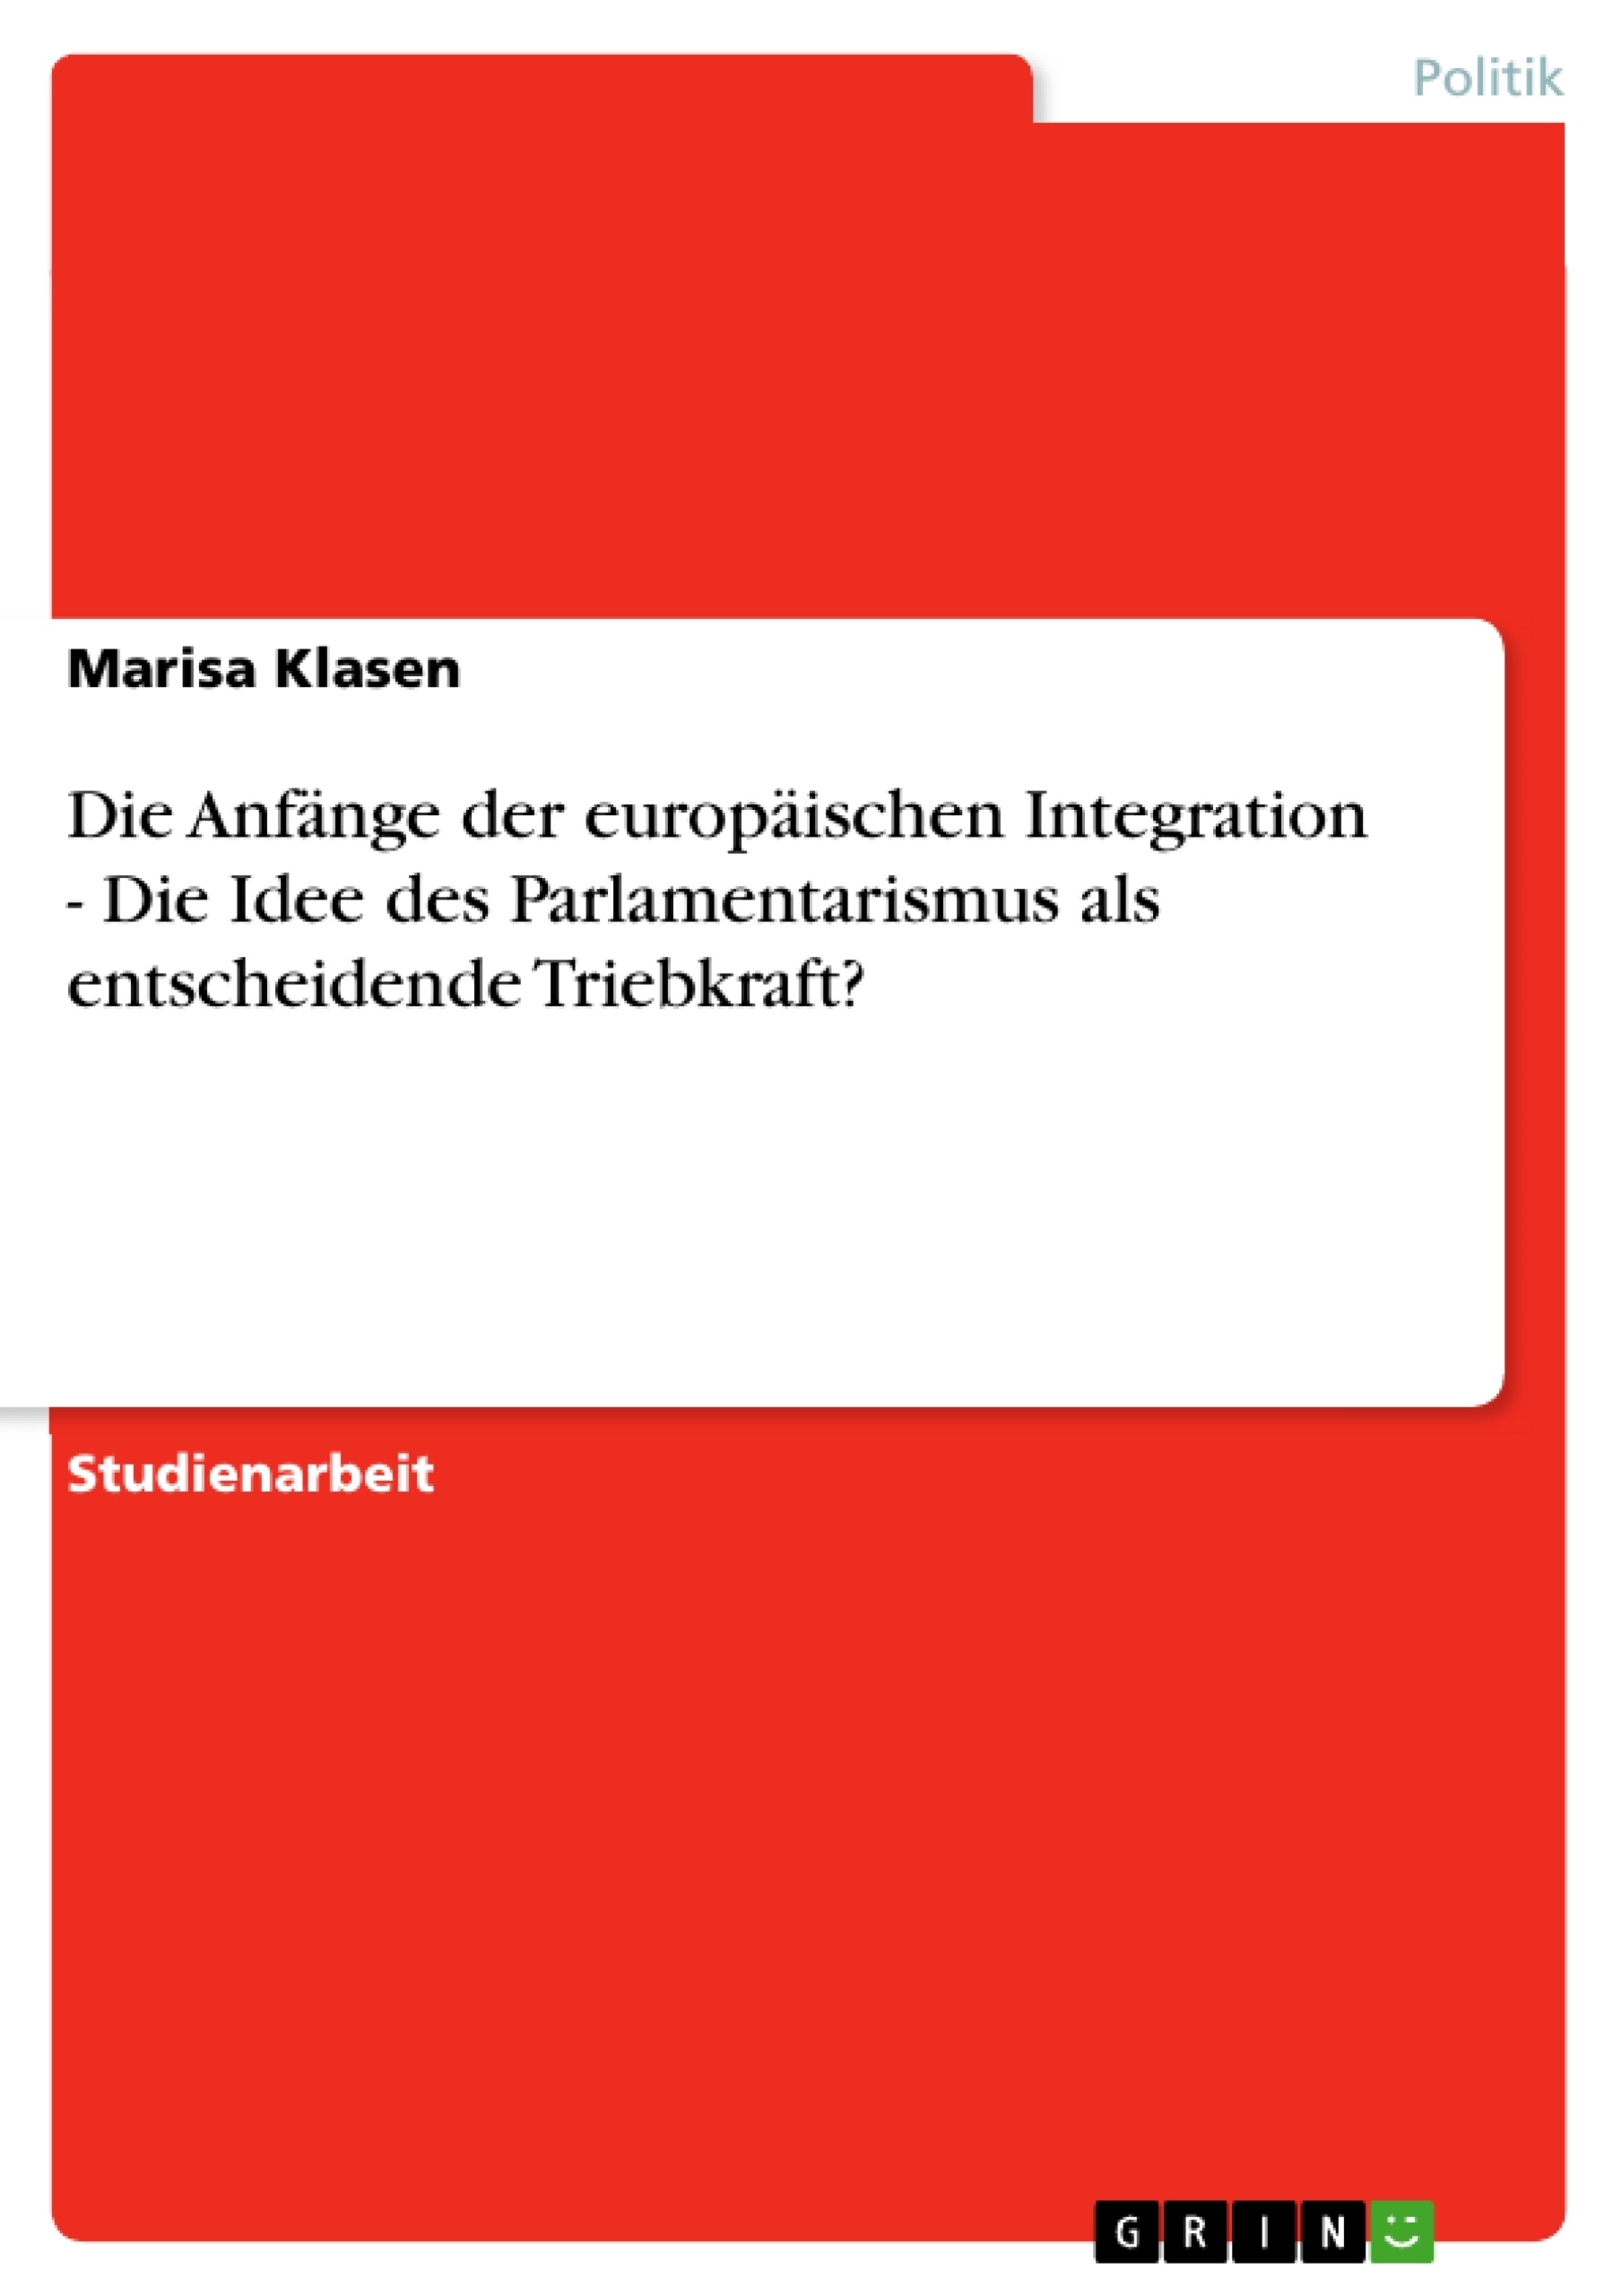 Title: Die Anfänge der europäischen Integration - Die Idee des Parlamentarismus als entscheidende Triebkraft?